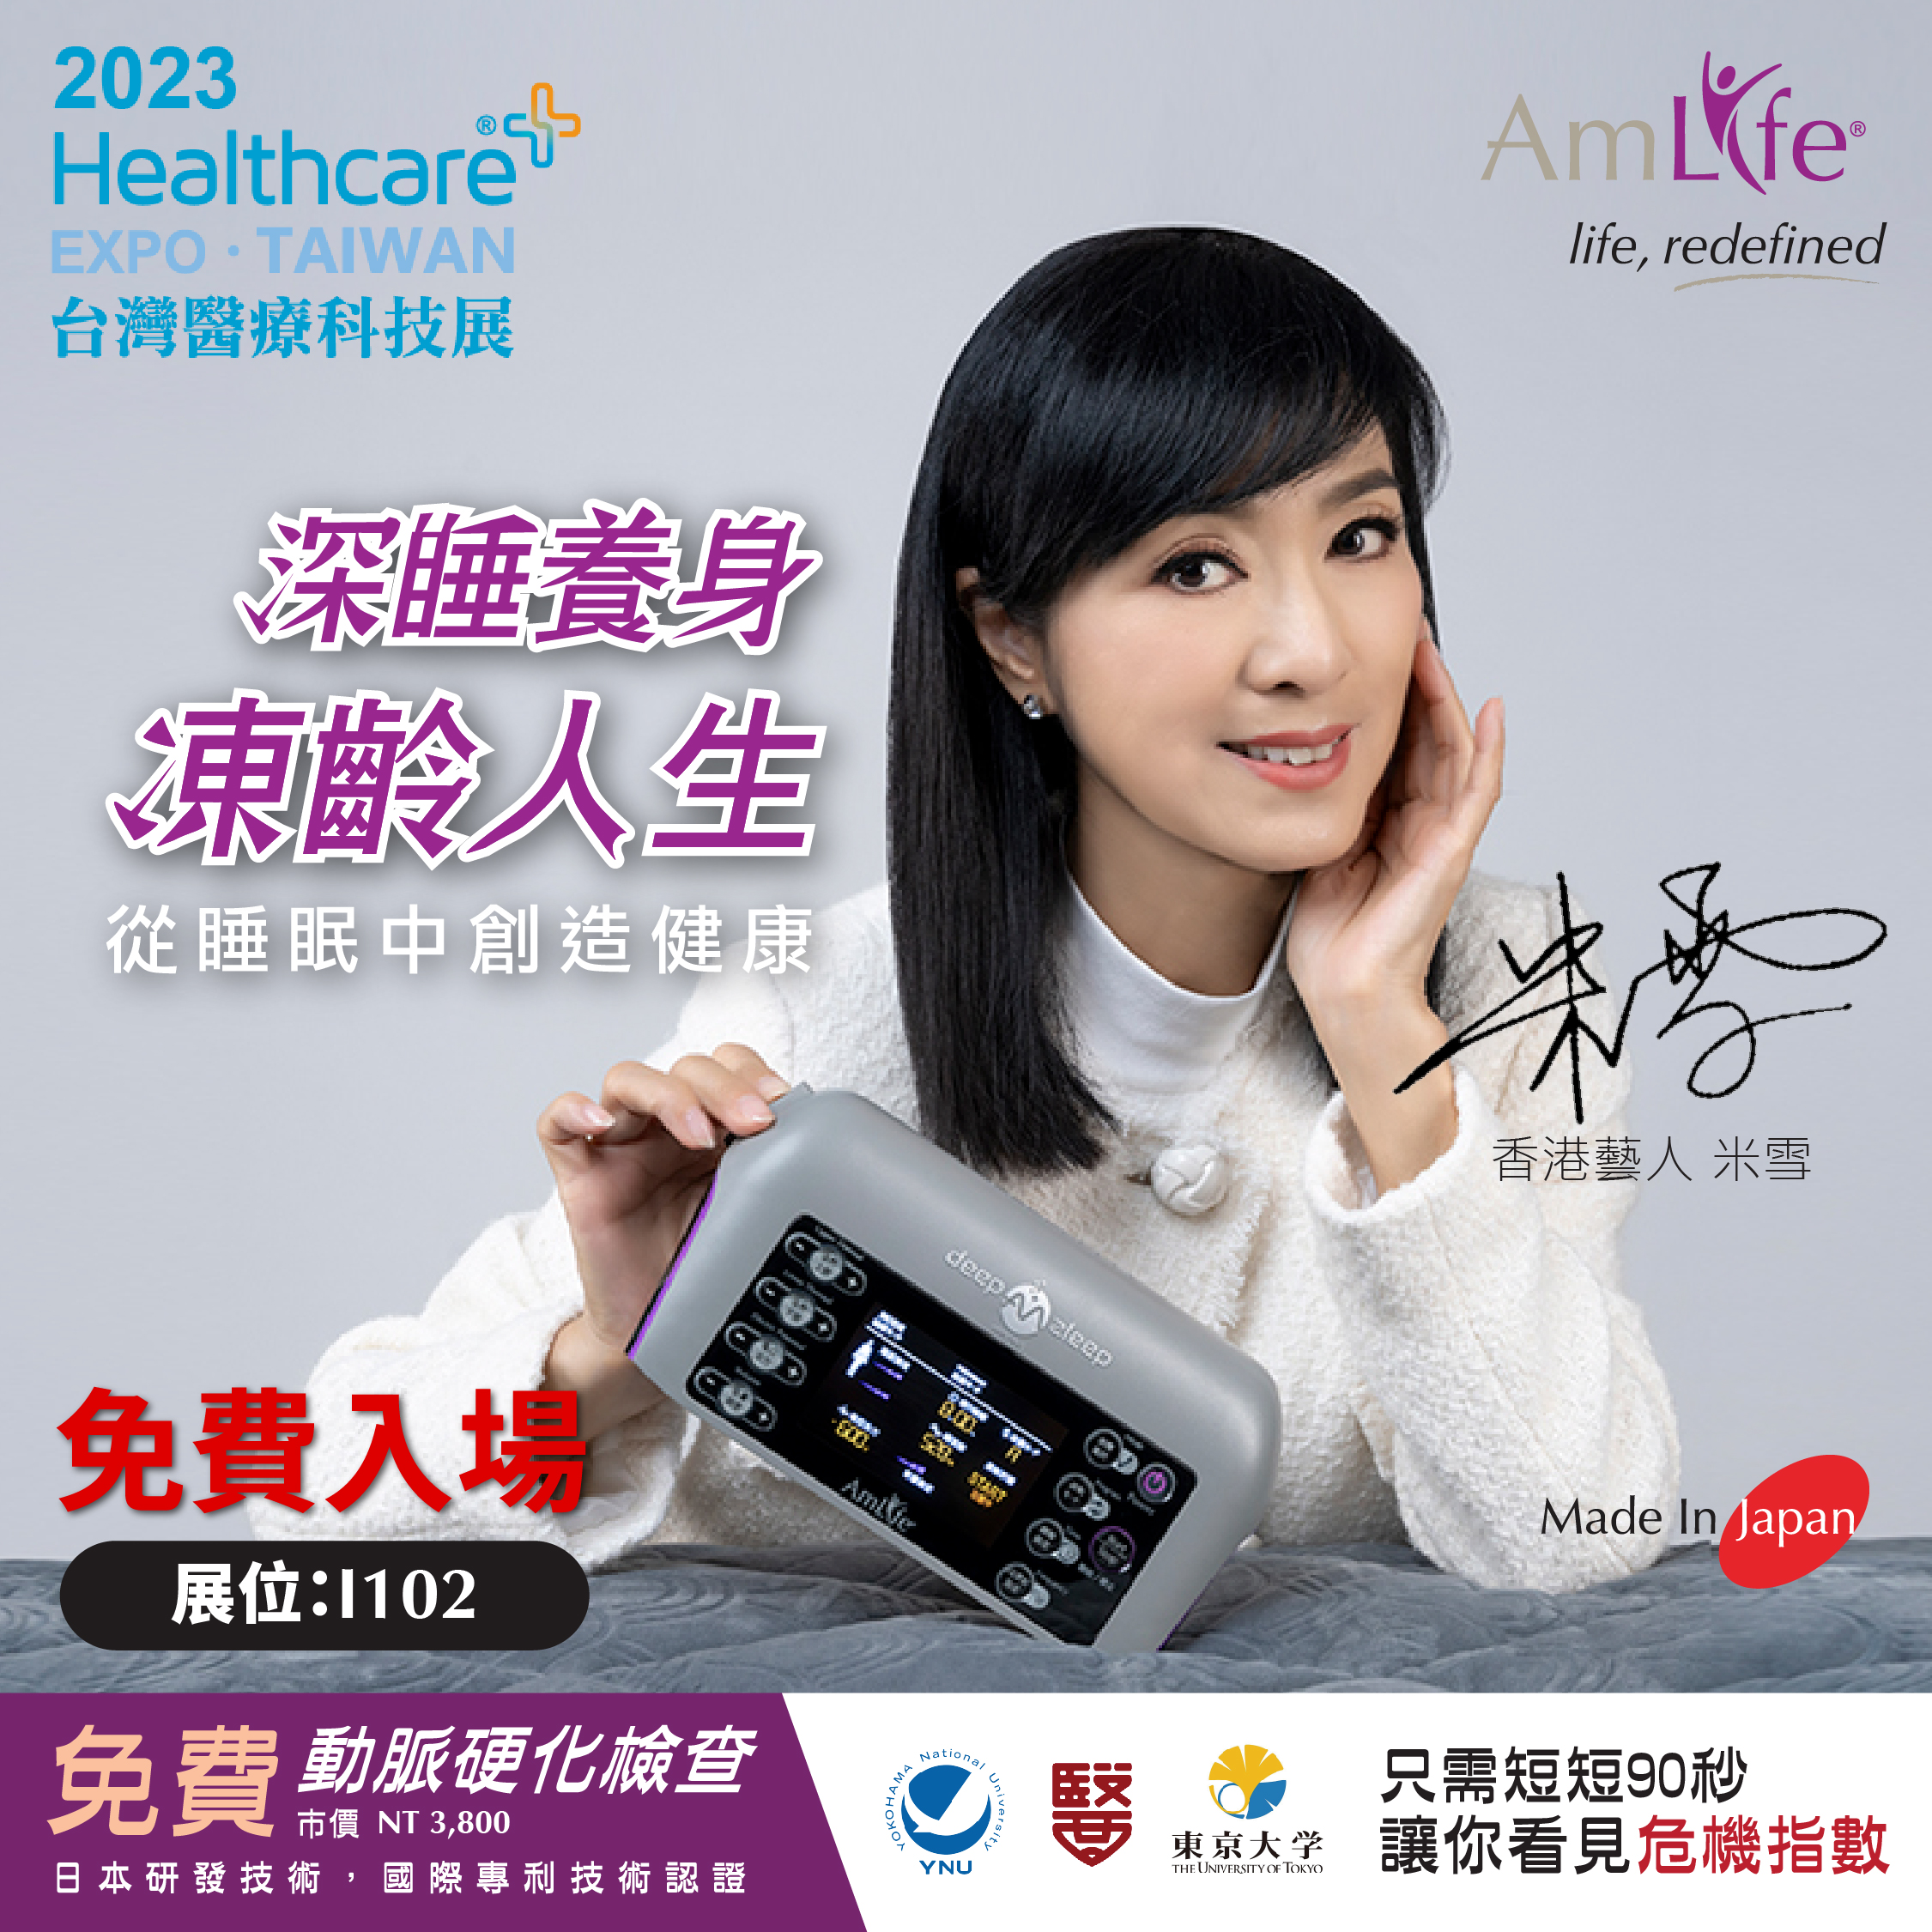 香港藝人米雪邀請您參加免費動脈硬化檢查